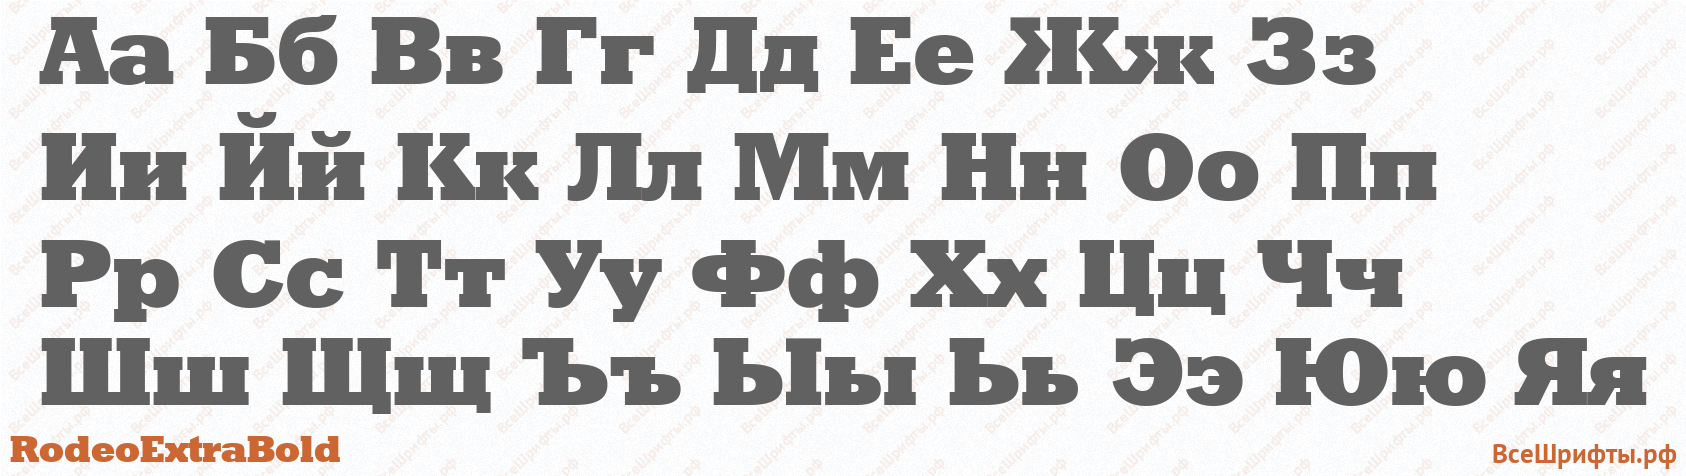 Шрифт RodeoExtraBold с русскими буквами